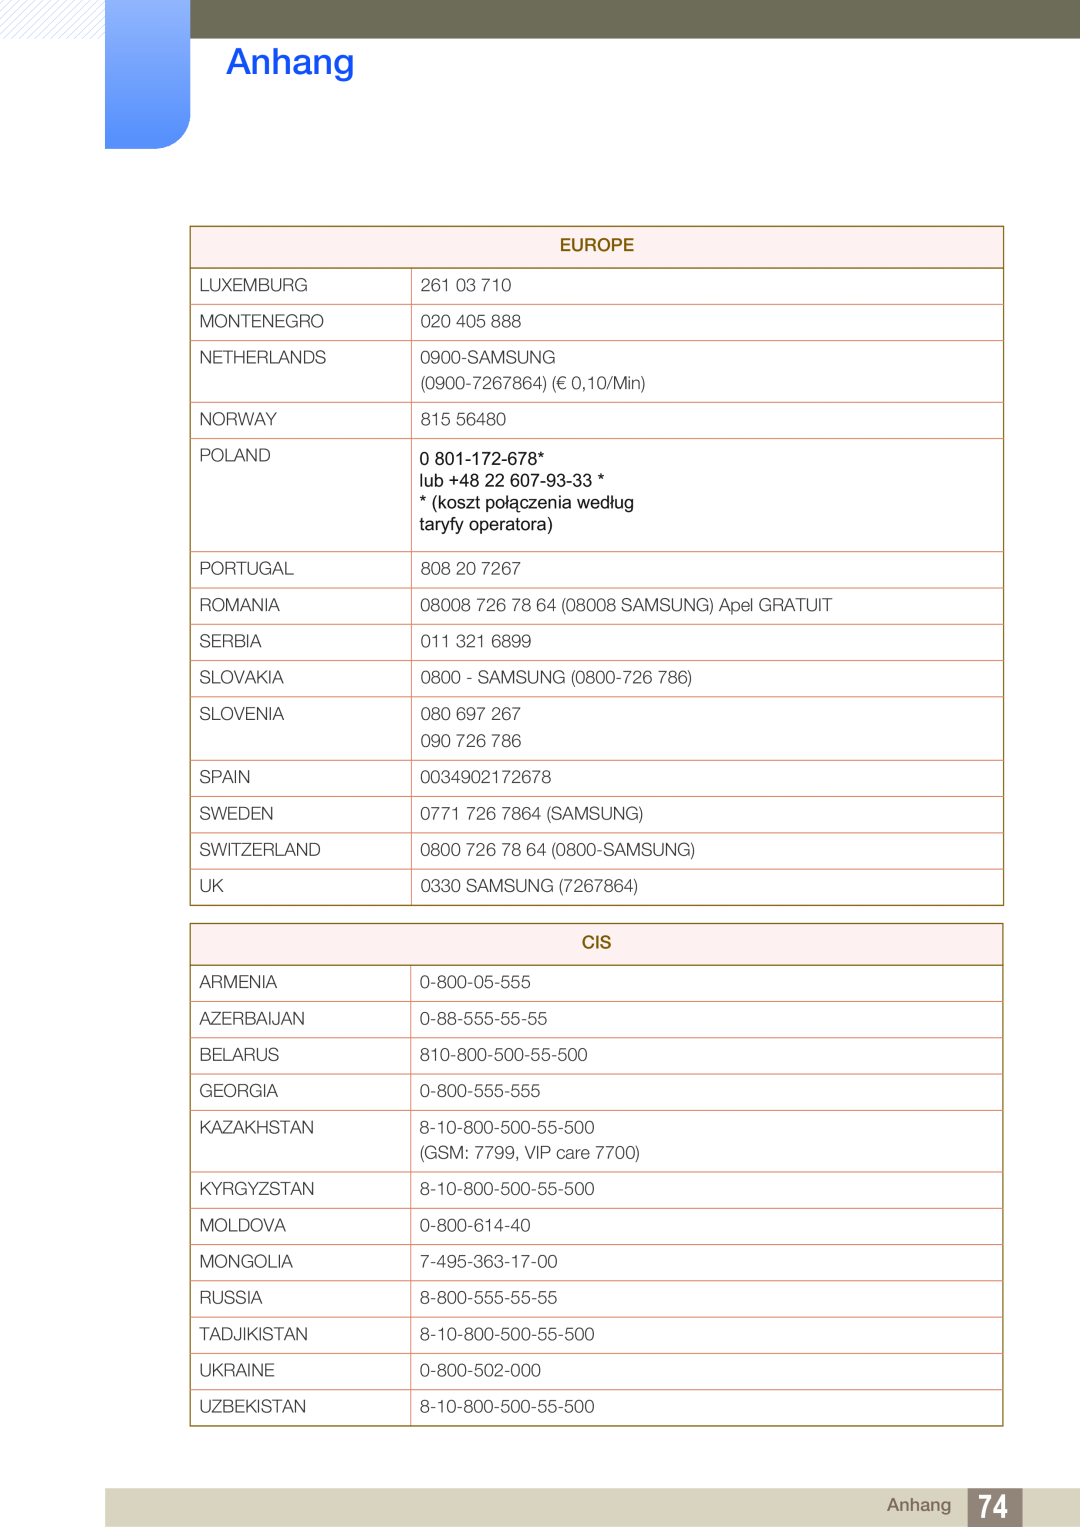 Samsung LF-NXN2N/EN, LF00FNXPFBZXEN manual Anhang, Europe 